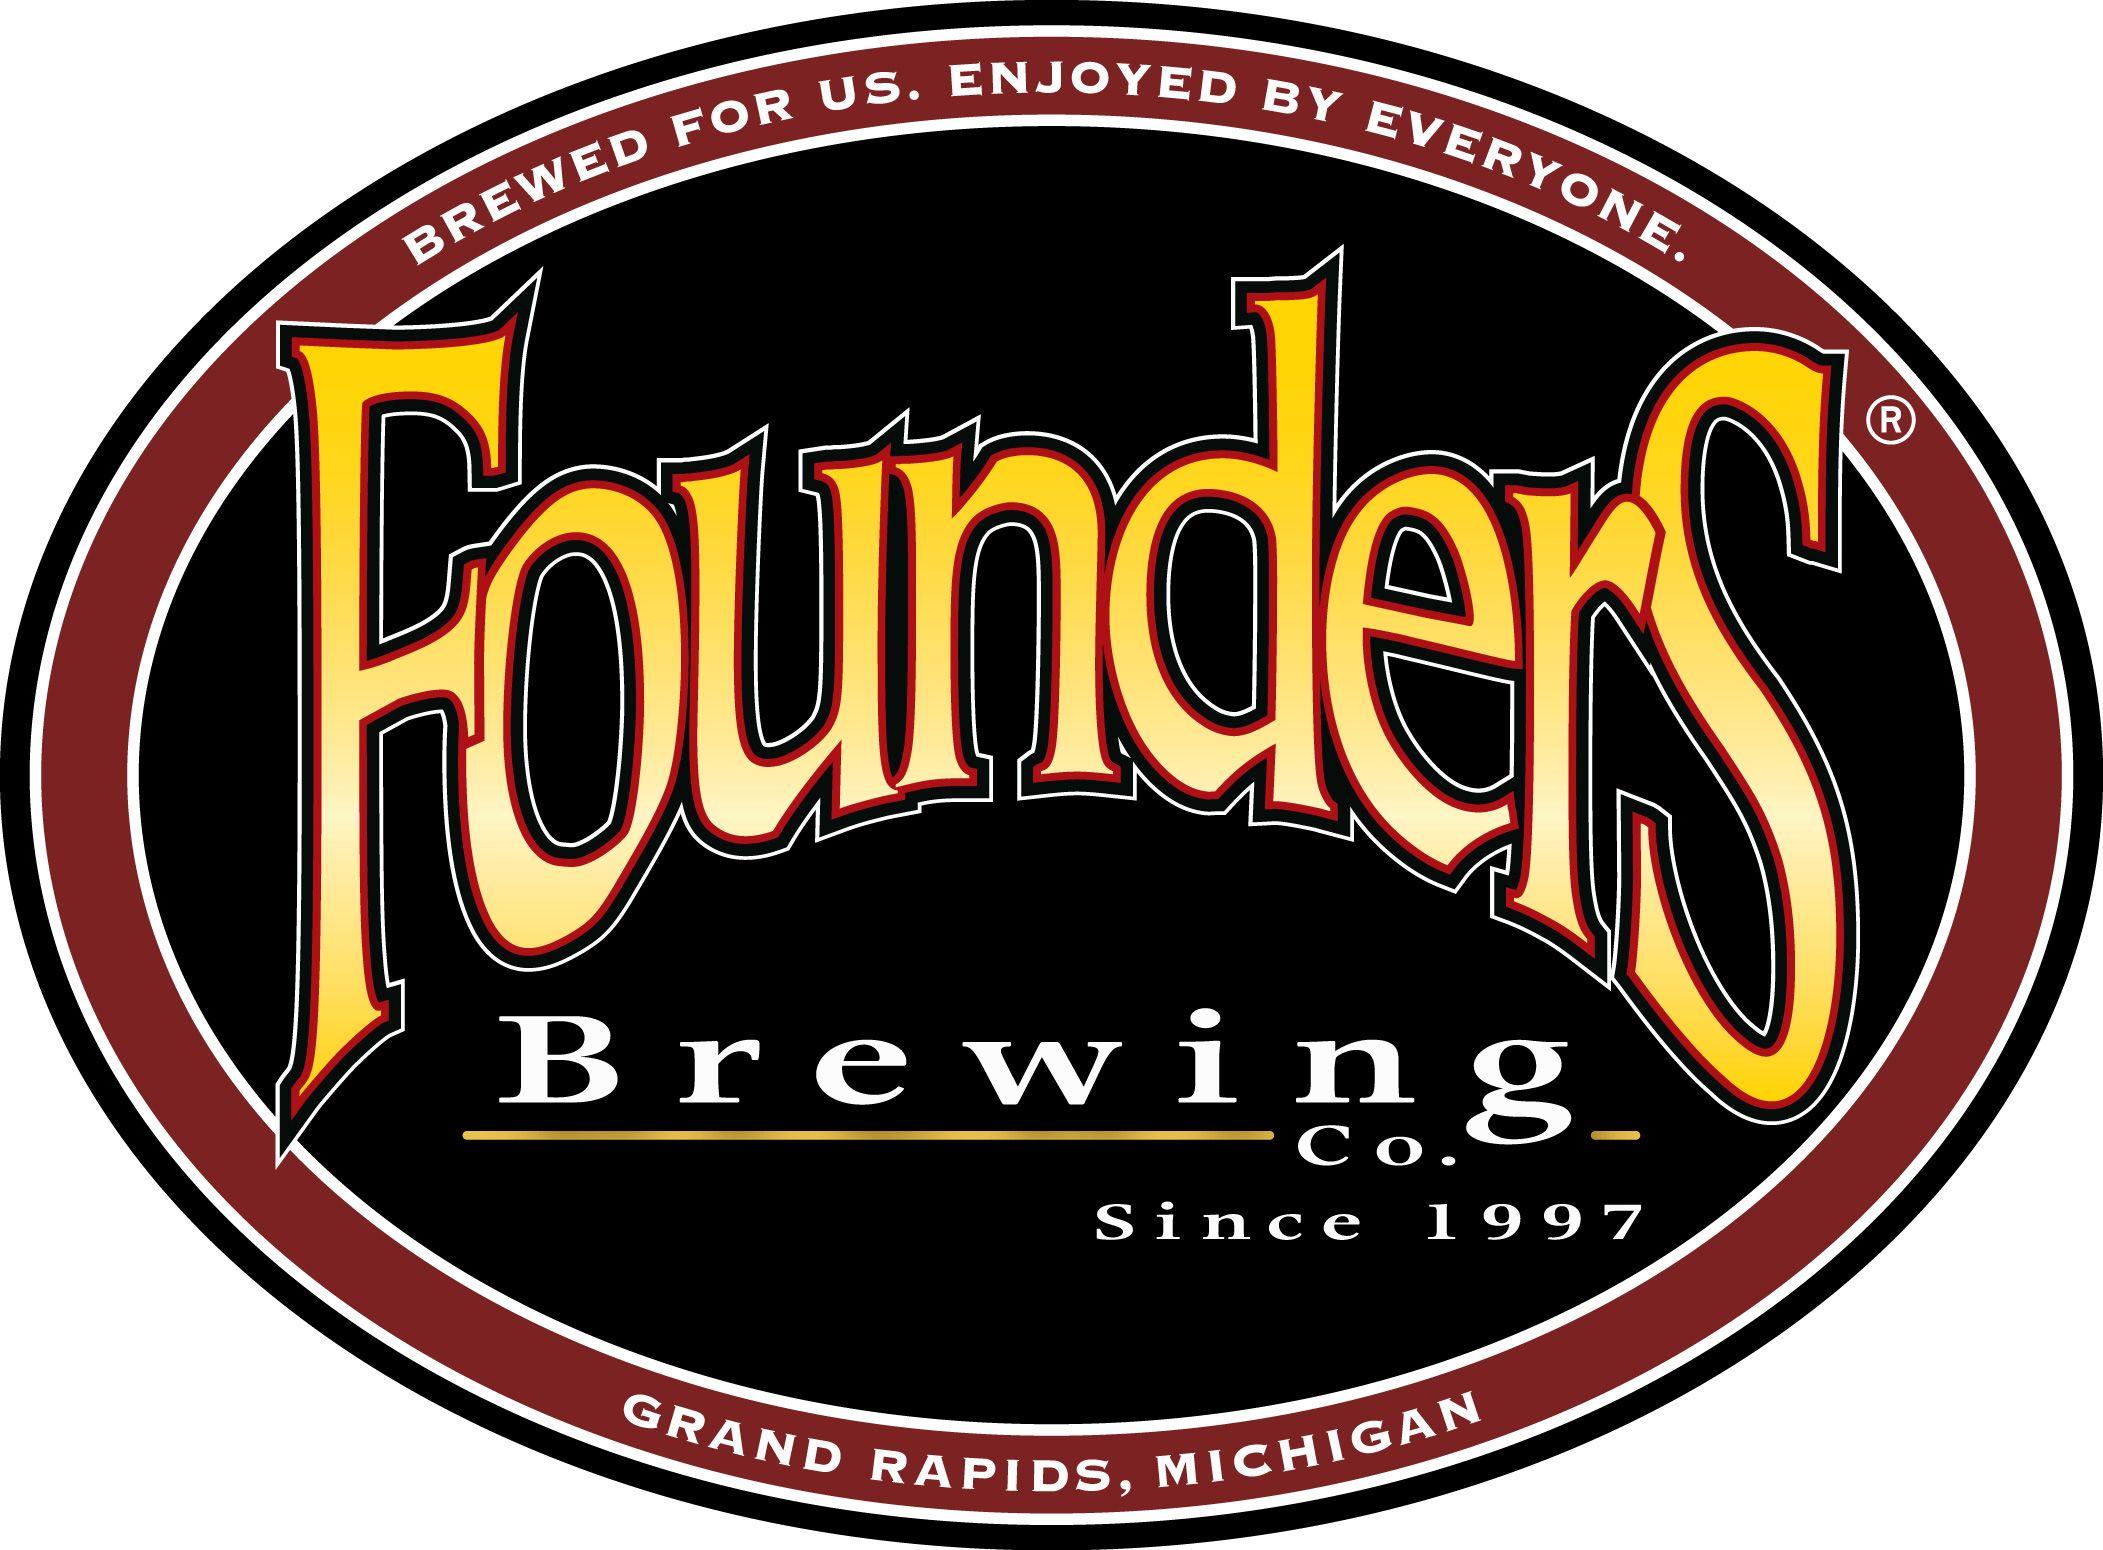 Founders Logo - Founders Brewing Logo - Beer Street Journal